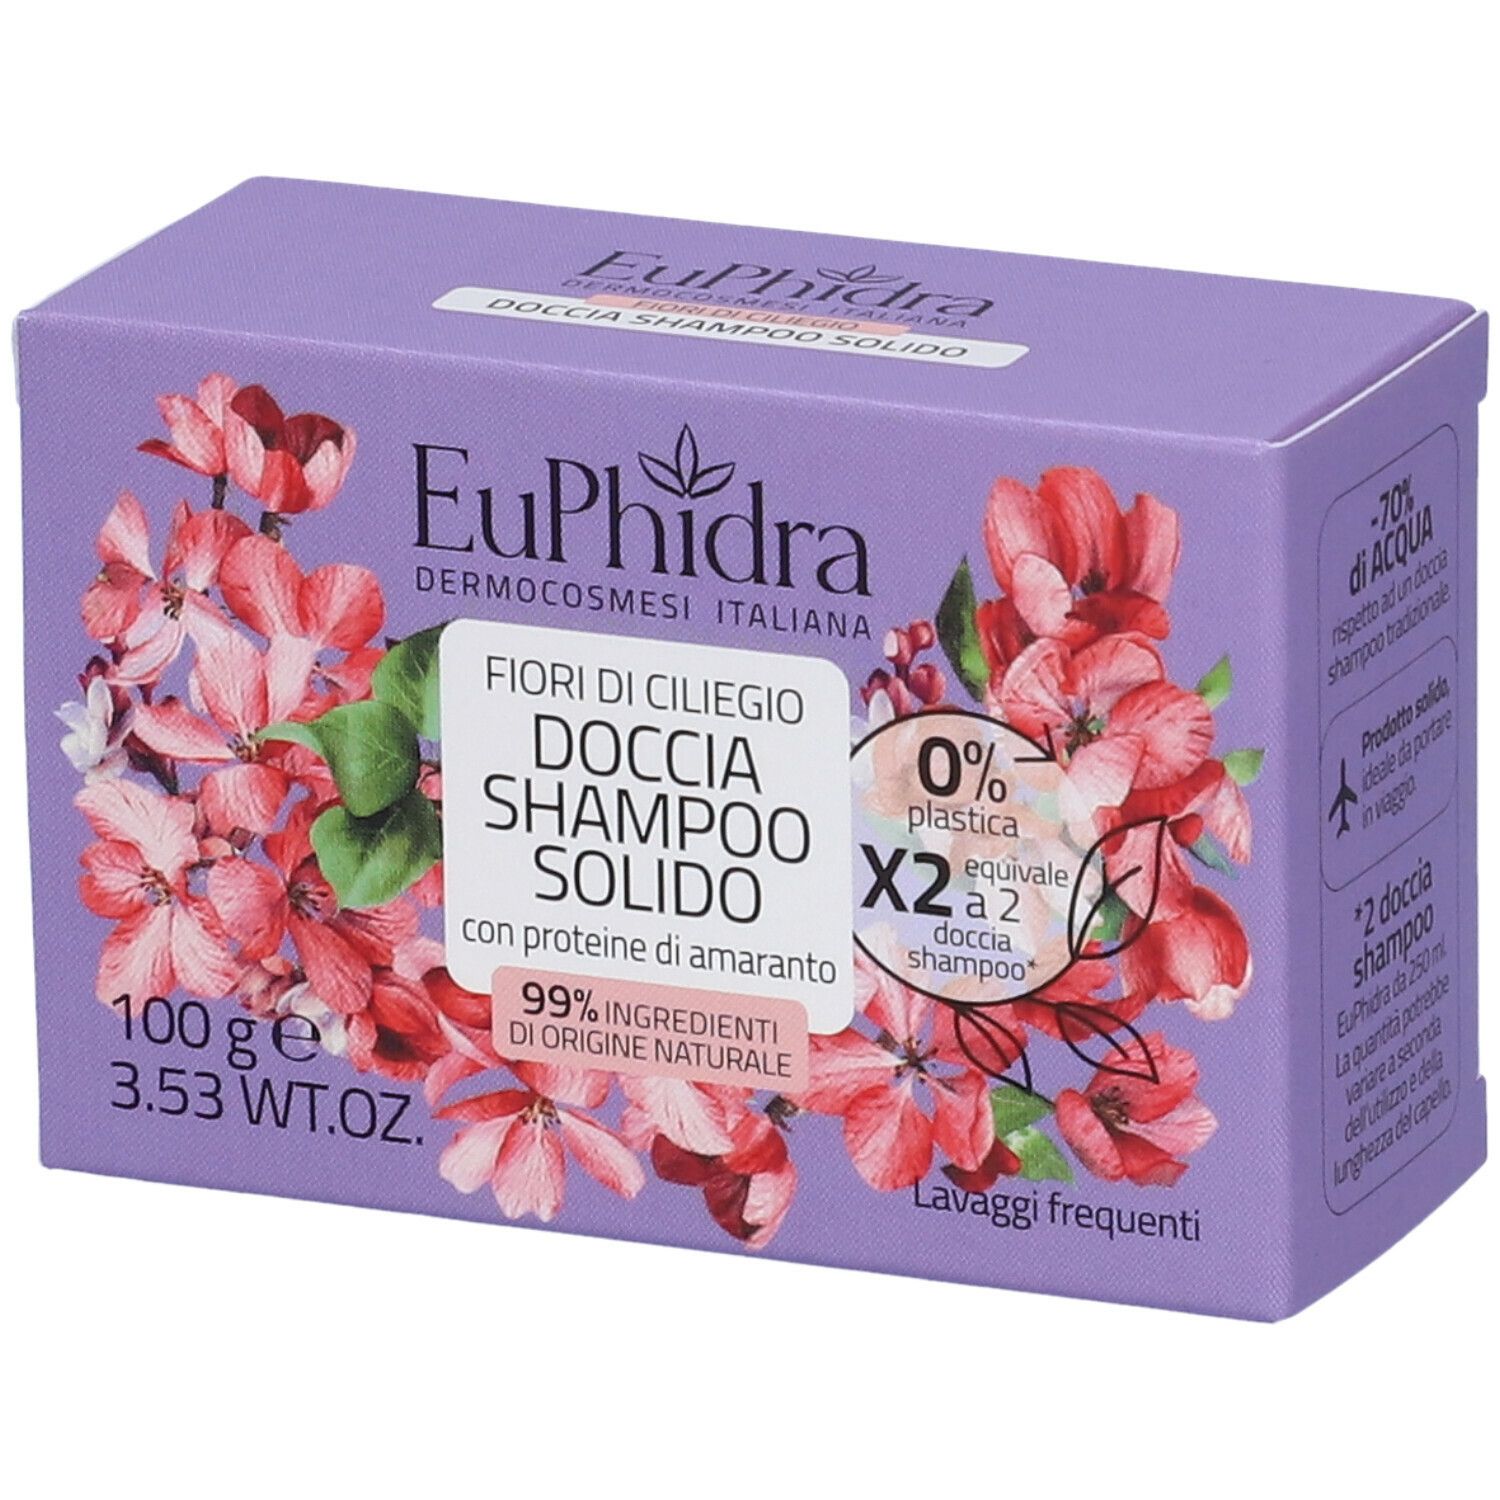 Euphidra Doccia Shampoo Solido Fiori di Ciliegio